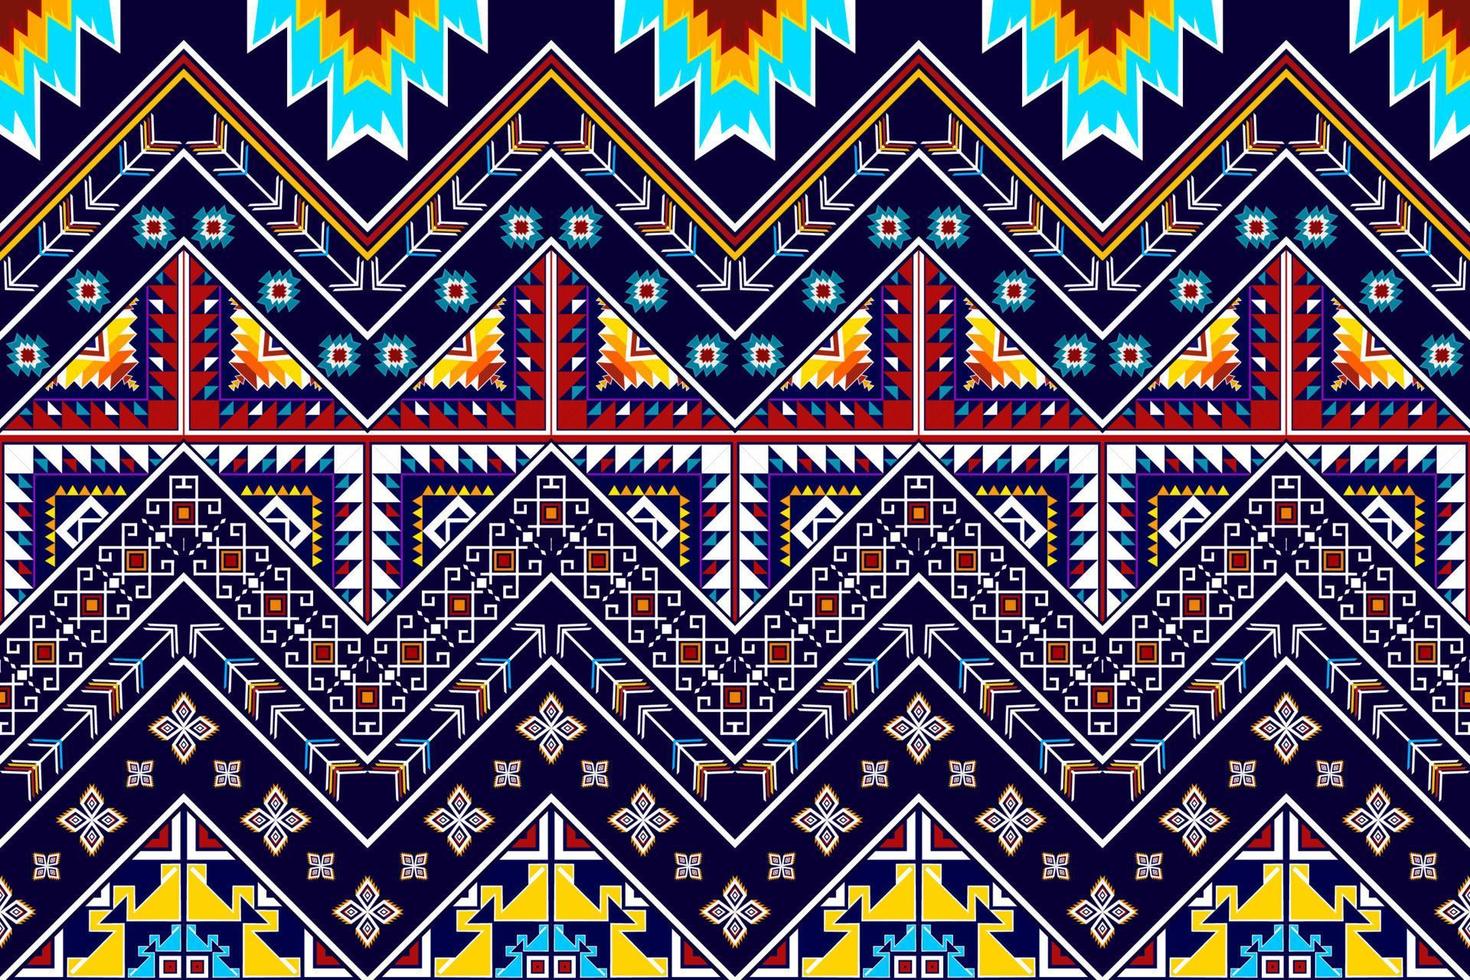 ikat geometrisch abstract etnisch patroonontwerp. Azteekse stof tapijt mandala ornament etnische chevron textiel decoratie behang. tribal boho inheemse etnische traditionele borduurwerk vector achtergrond